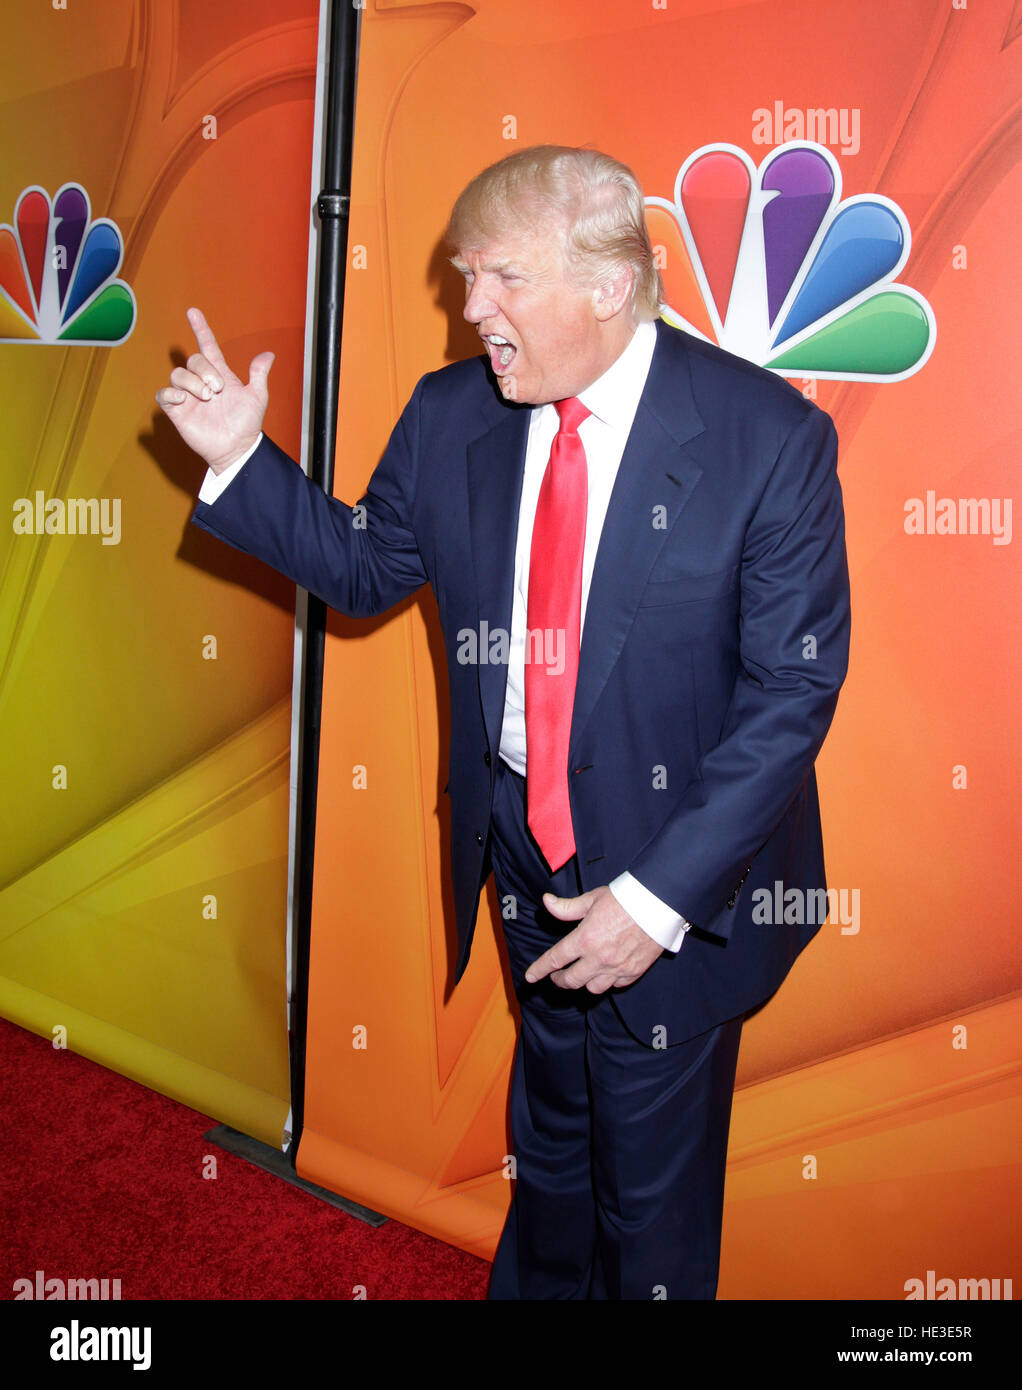 Endlich ist es bewiesen: Trump hat Mini-Hände